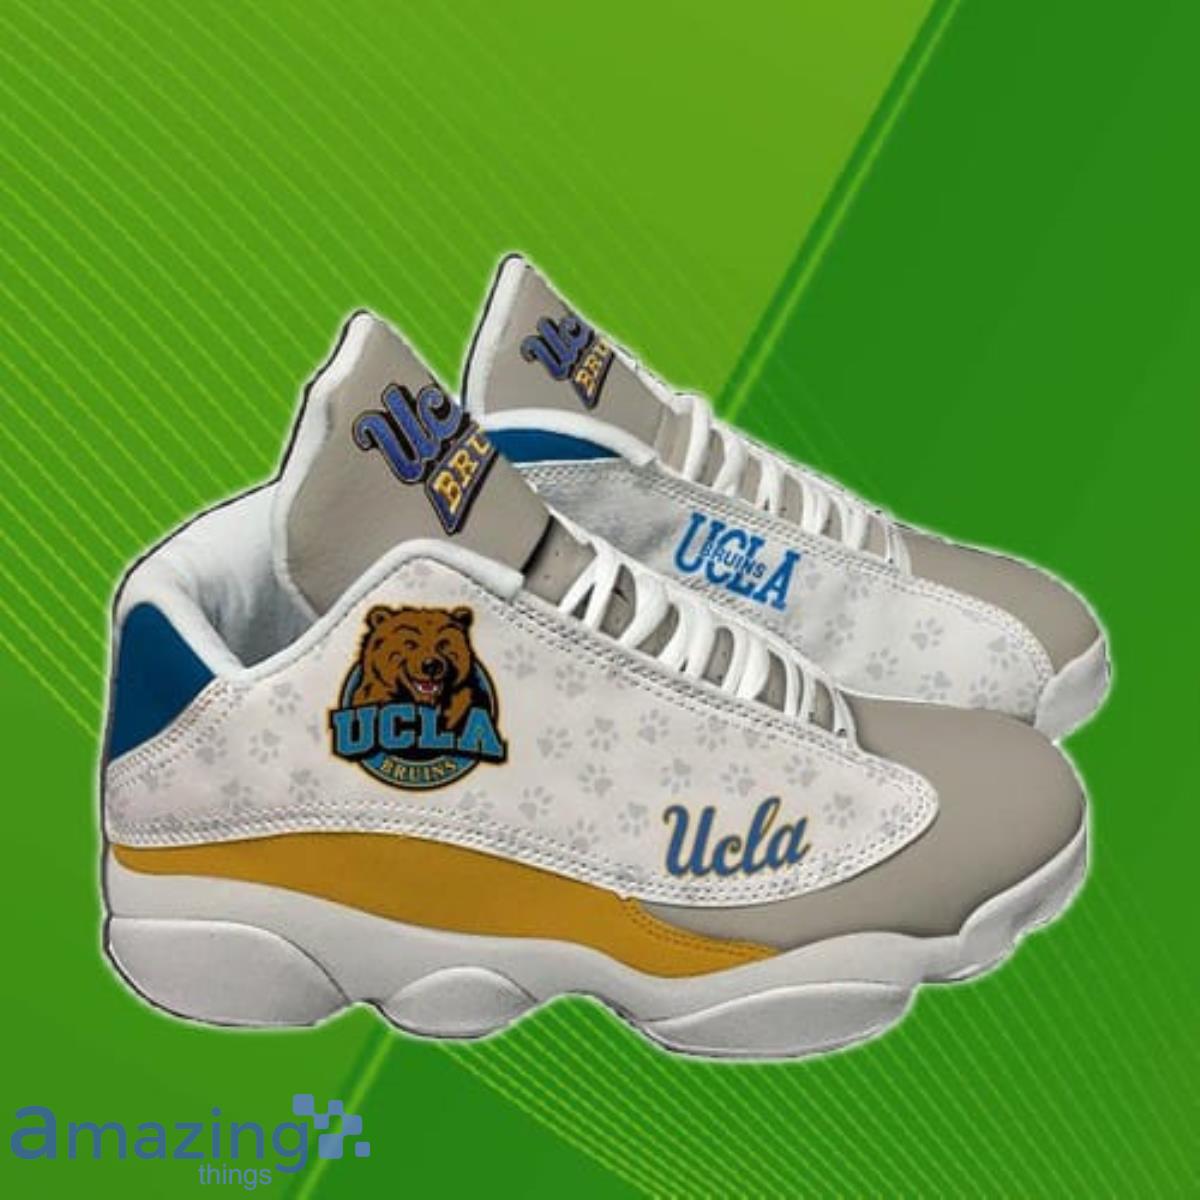 ucla jordan shoes